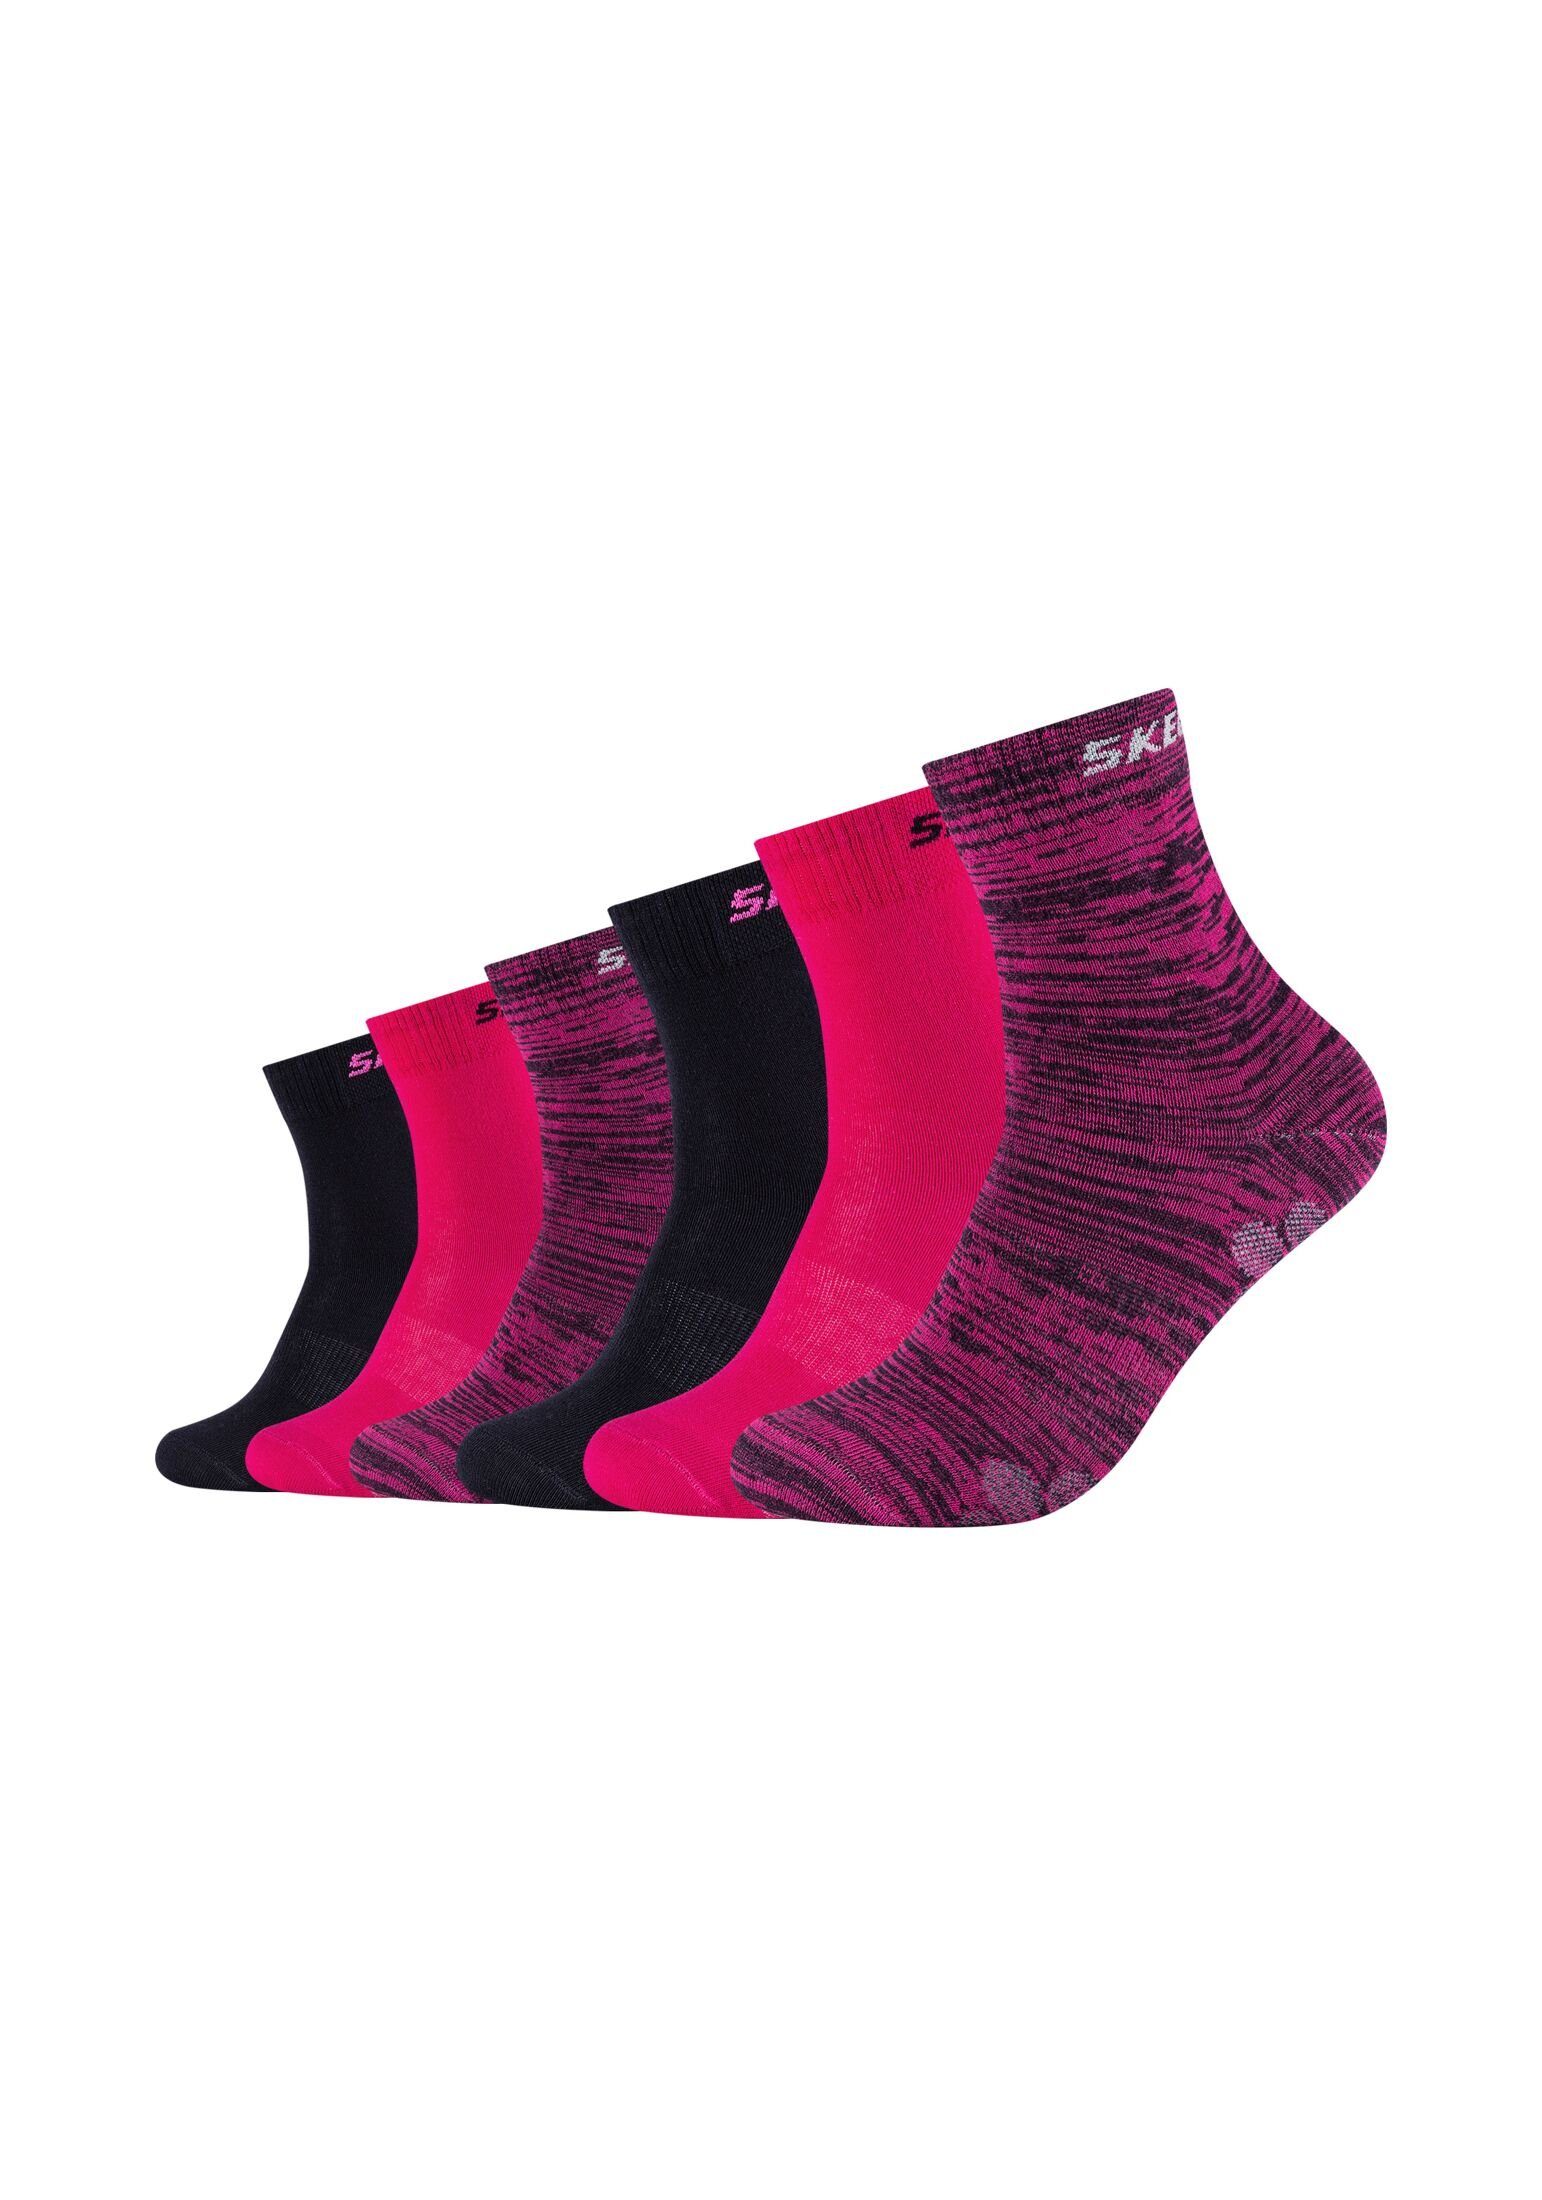 Sonderpreis Skechers Socken Socken Pack glow 6er mouliné pink